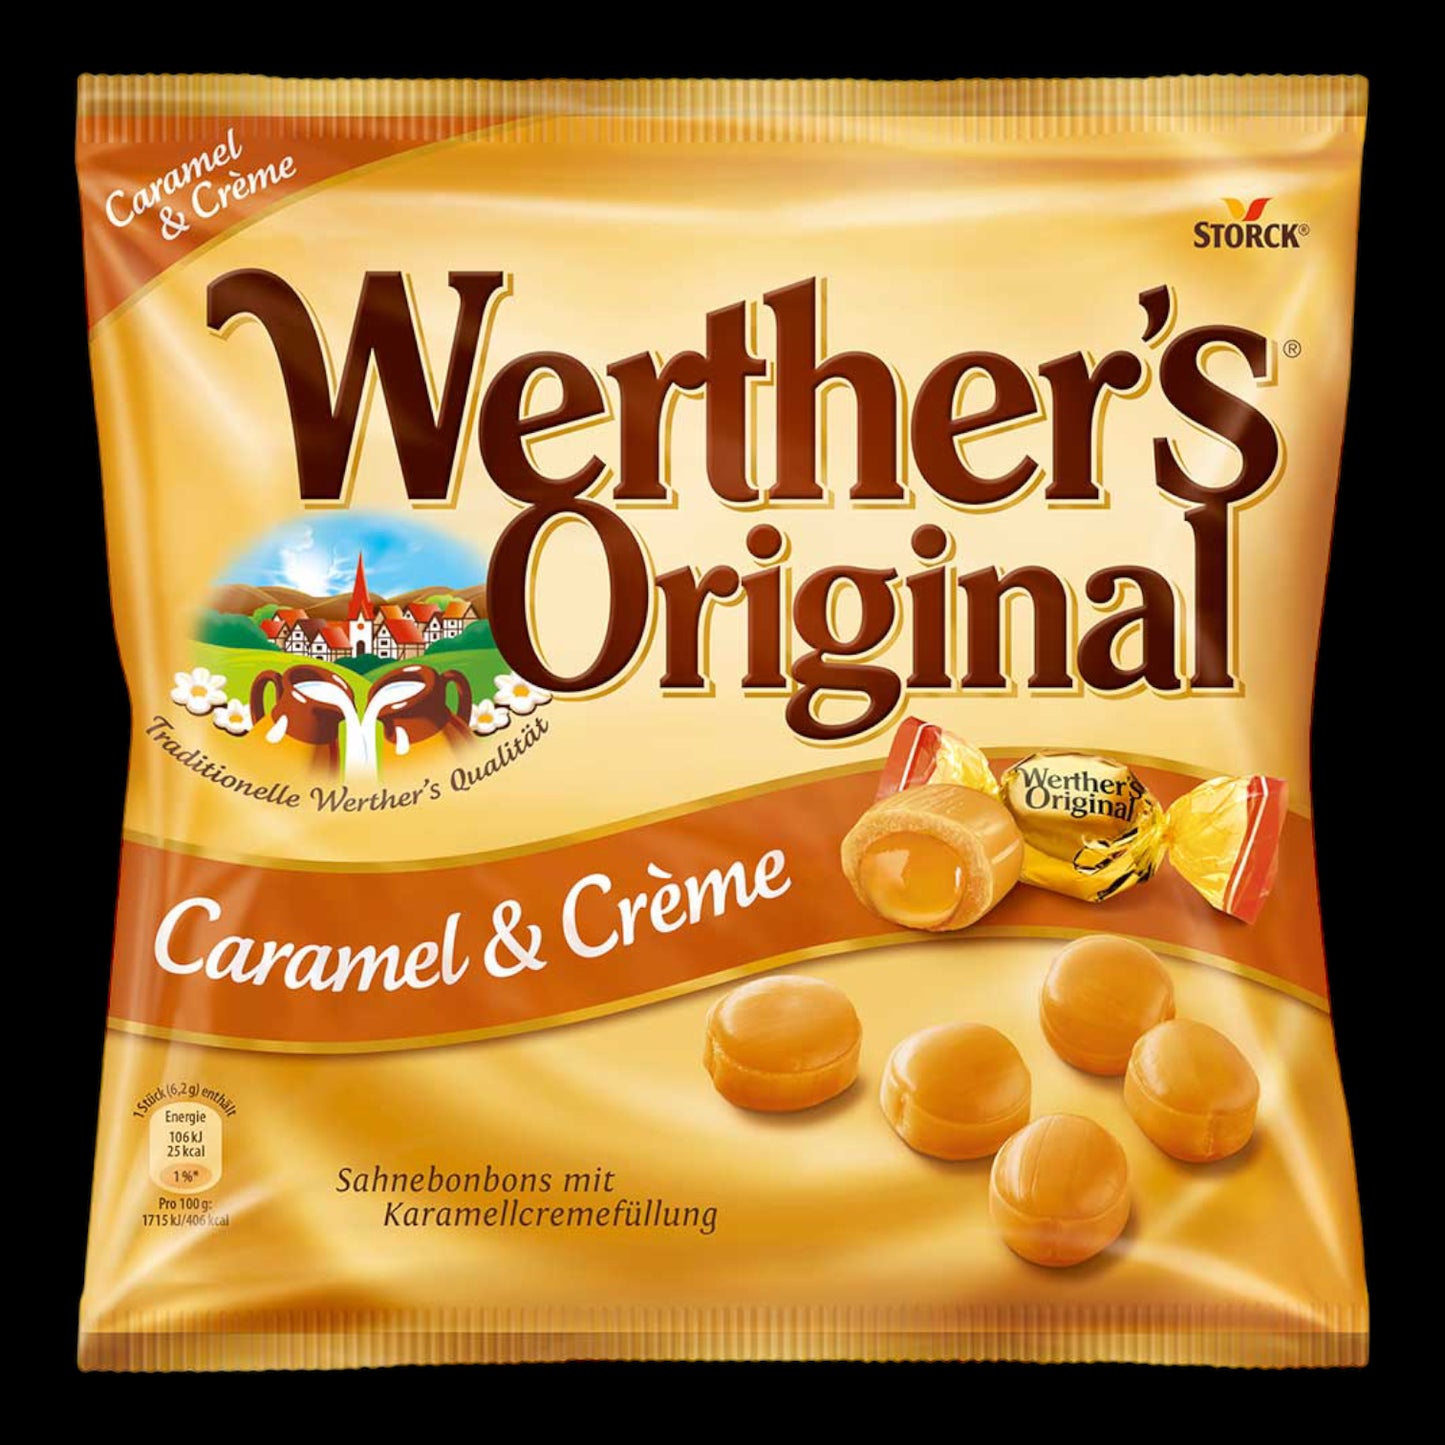 Werther's Original Caramel & Crème 225g